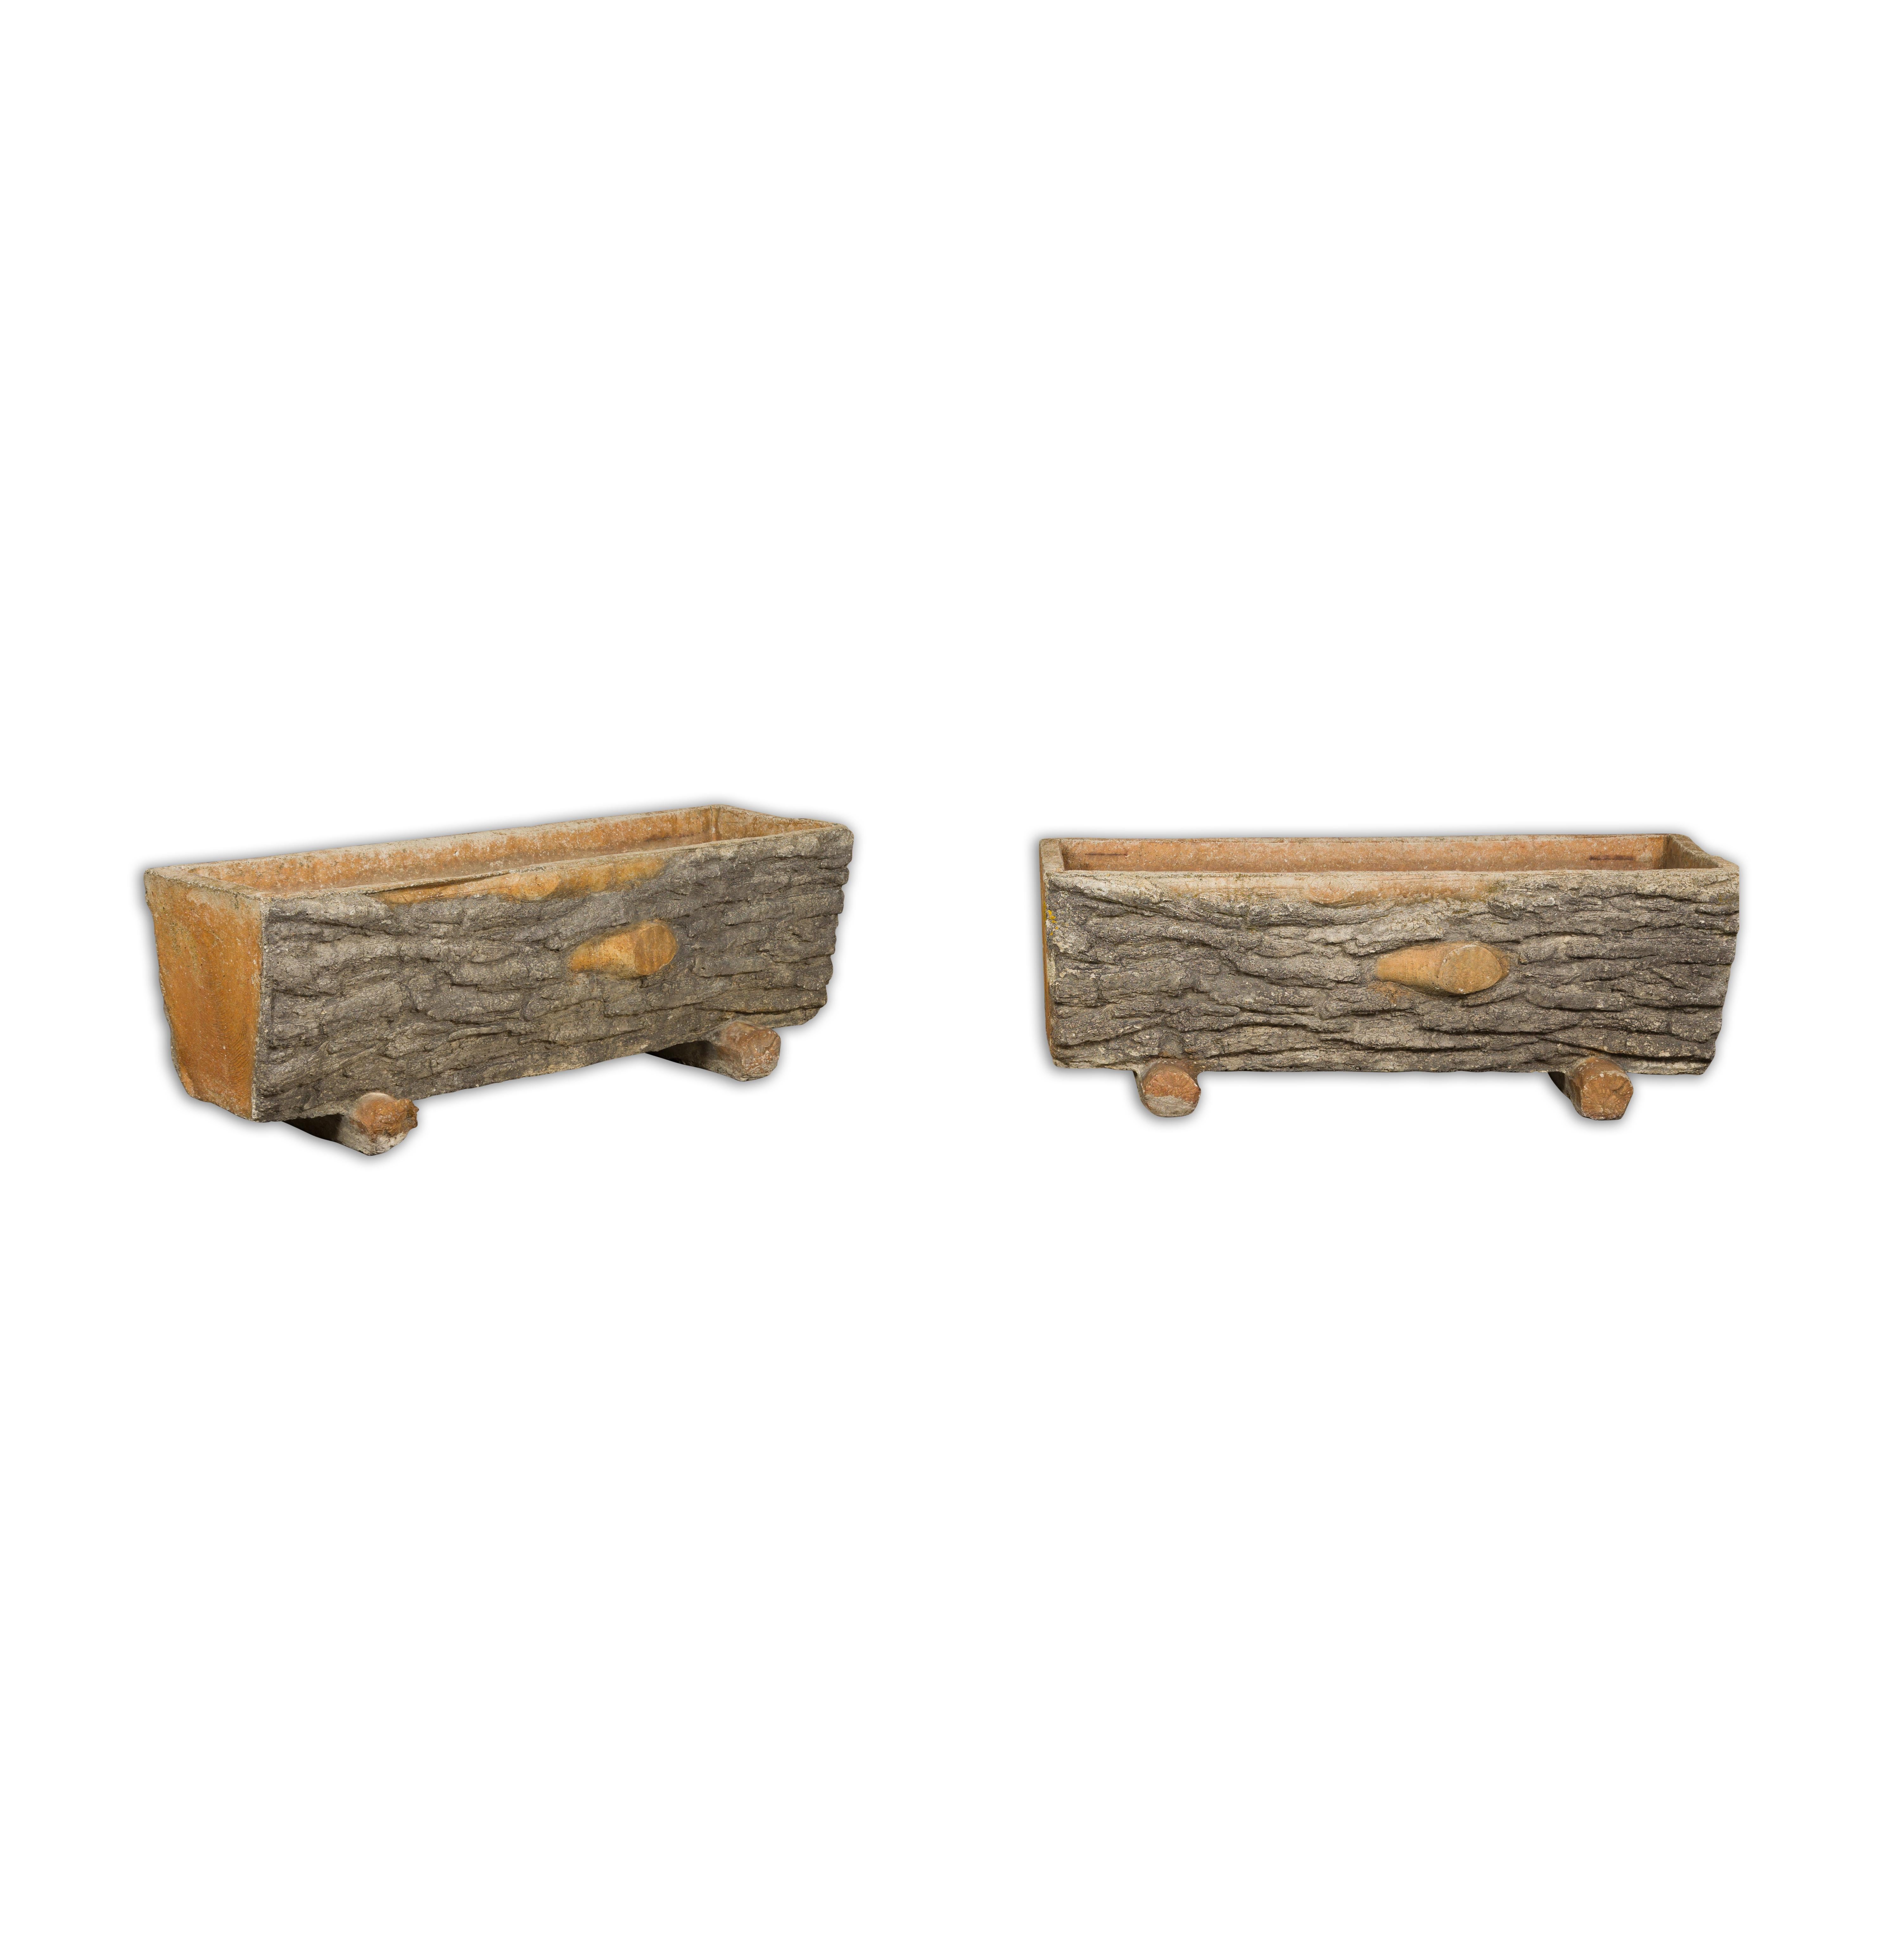 Ein Paar Boi-Pflanzgefäße in Trogform aus der Mitte des Jahrhunderts, aus Beton gefertigt und mit Grau- und Orangetönen akzentuiert. Bringen Sie einen Hauch von rustikalem Charme in Ihren Garten mit diesem Paar Boi-Pflanzgefäße in Trogform aus der